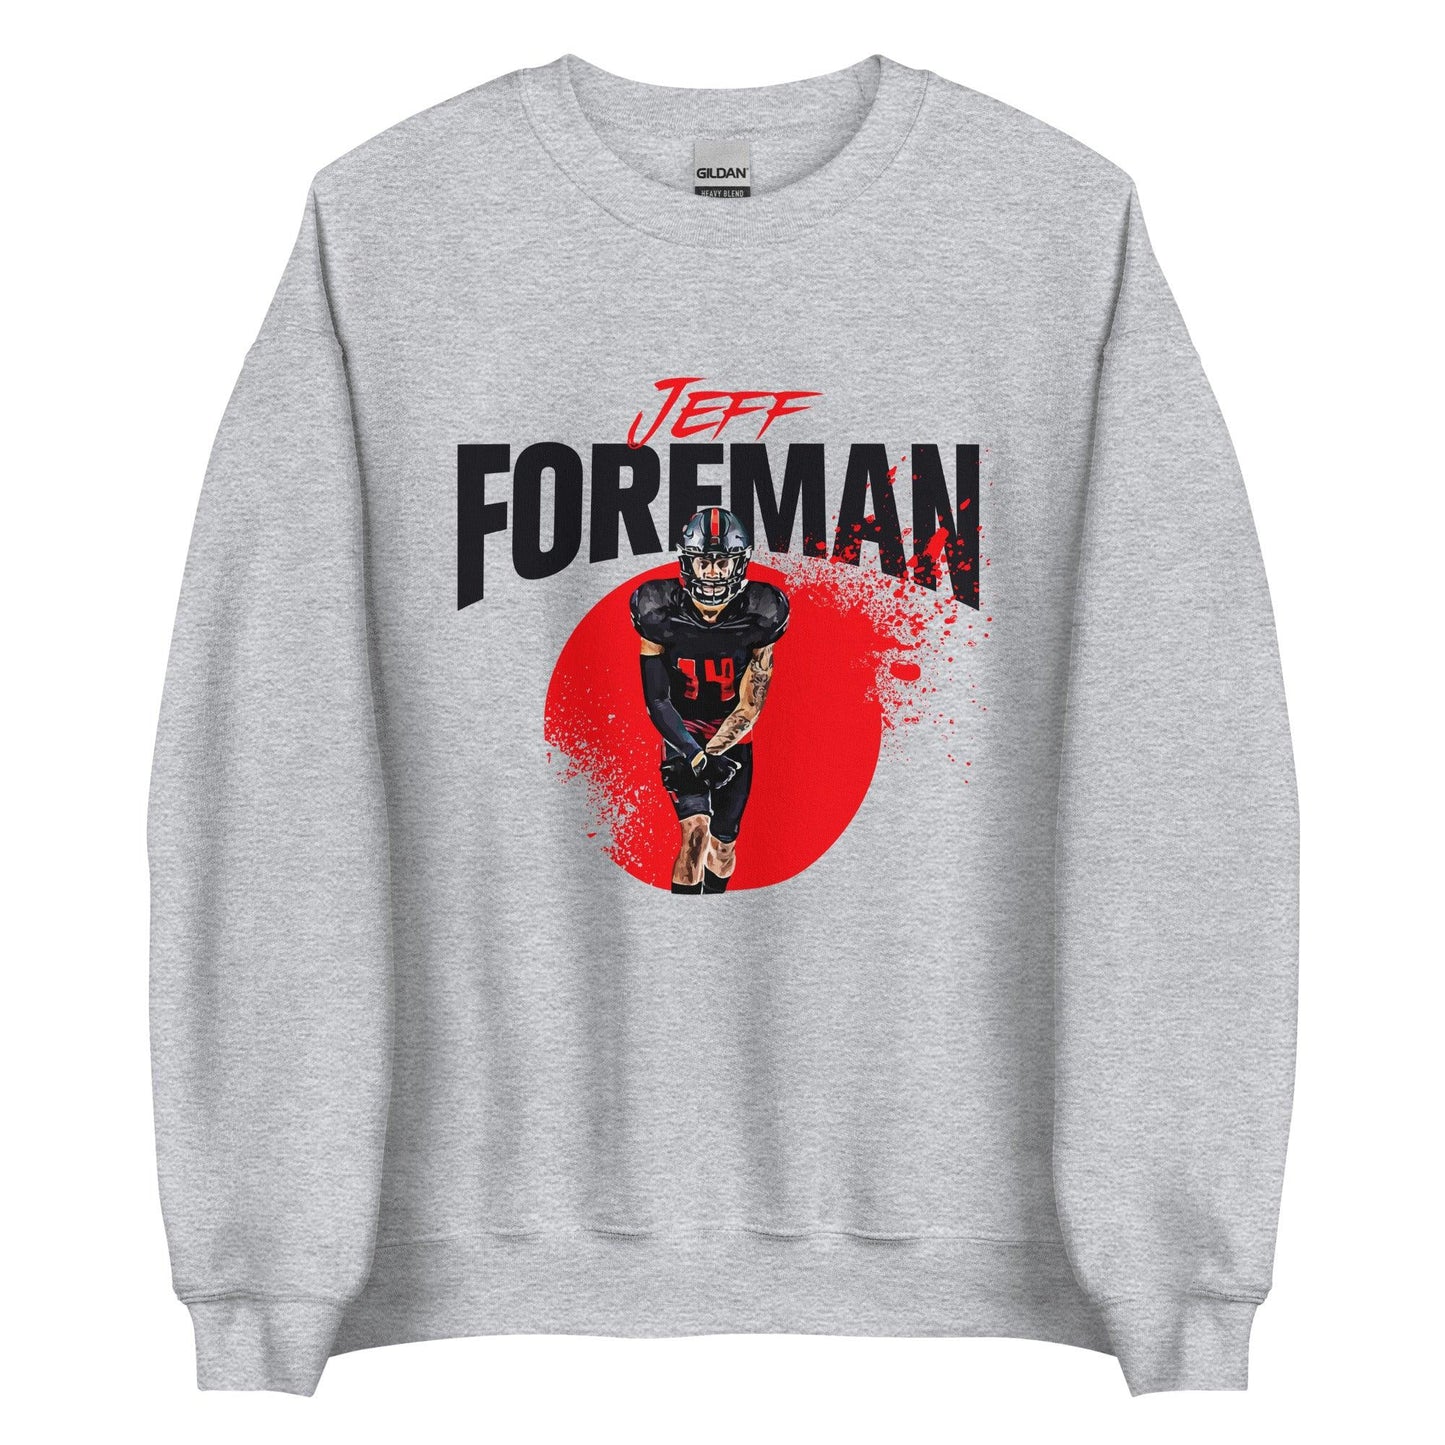 Jeff Foreman "Splash" Sweatshirt - Fan Arch